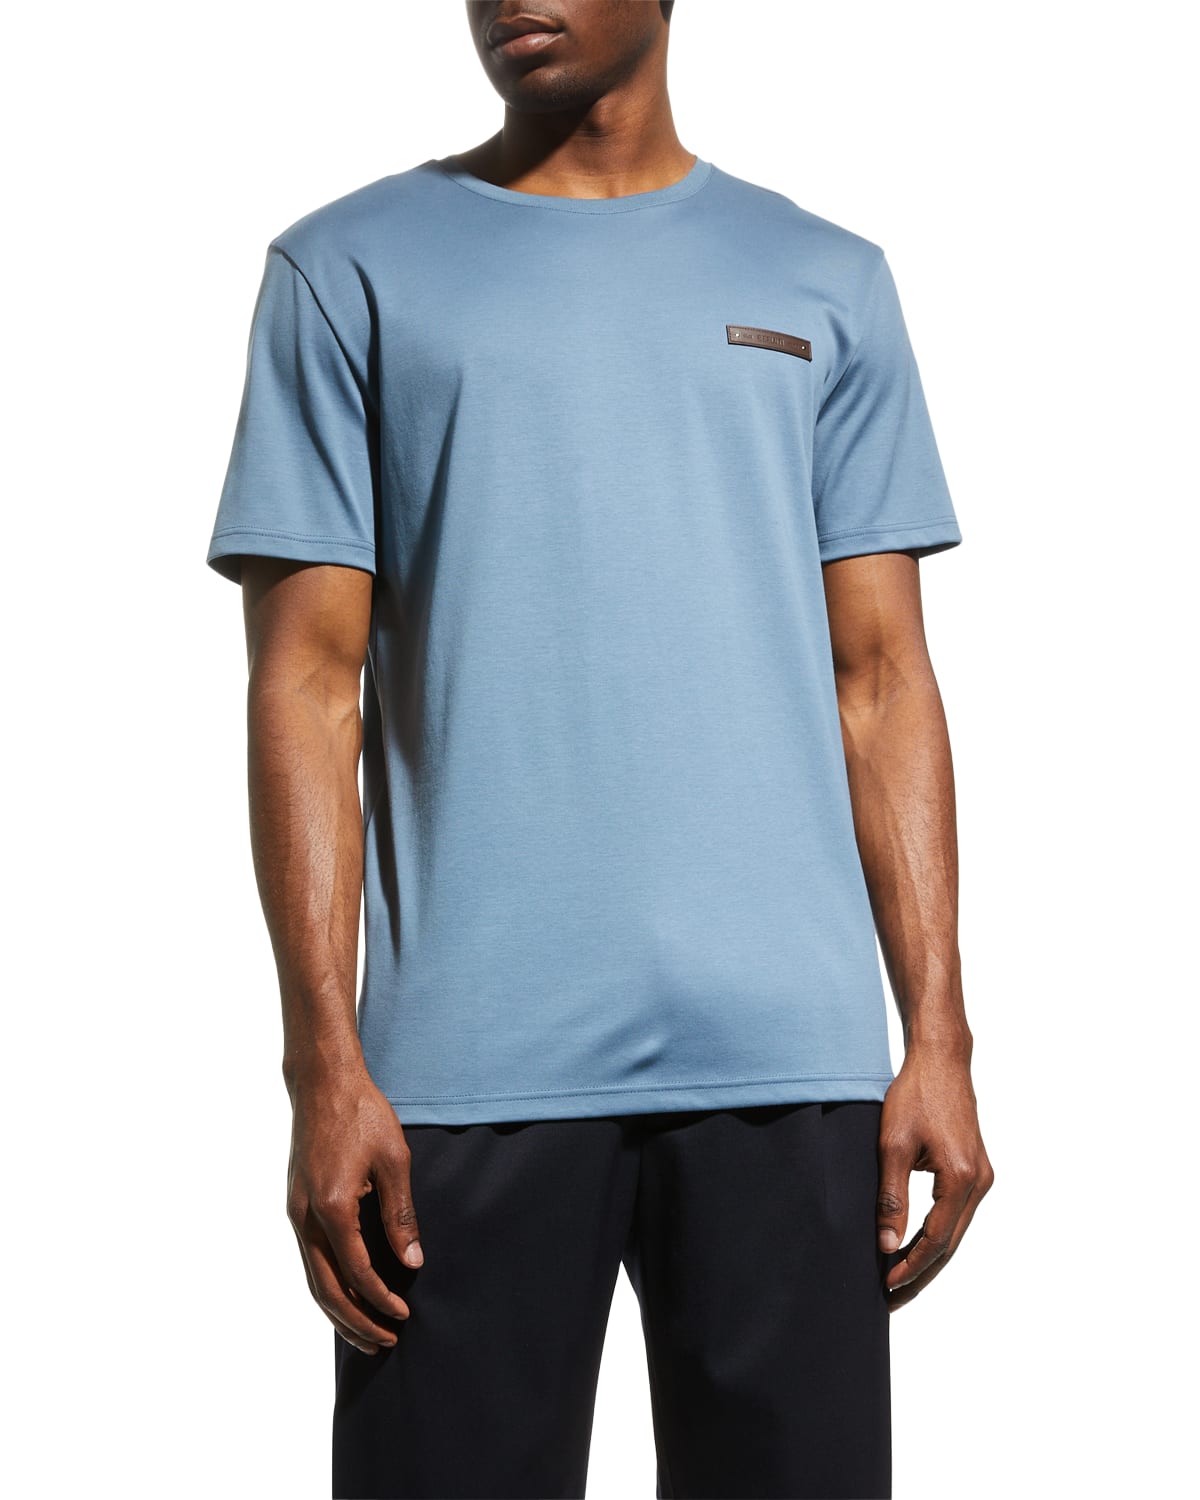 Berluti Shirt | Neiman Marcus